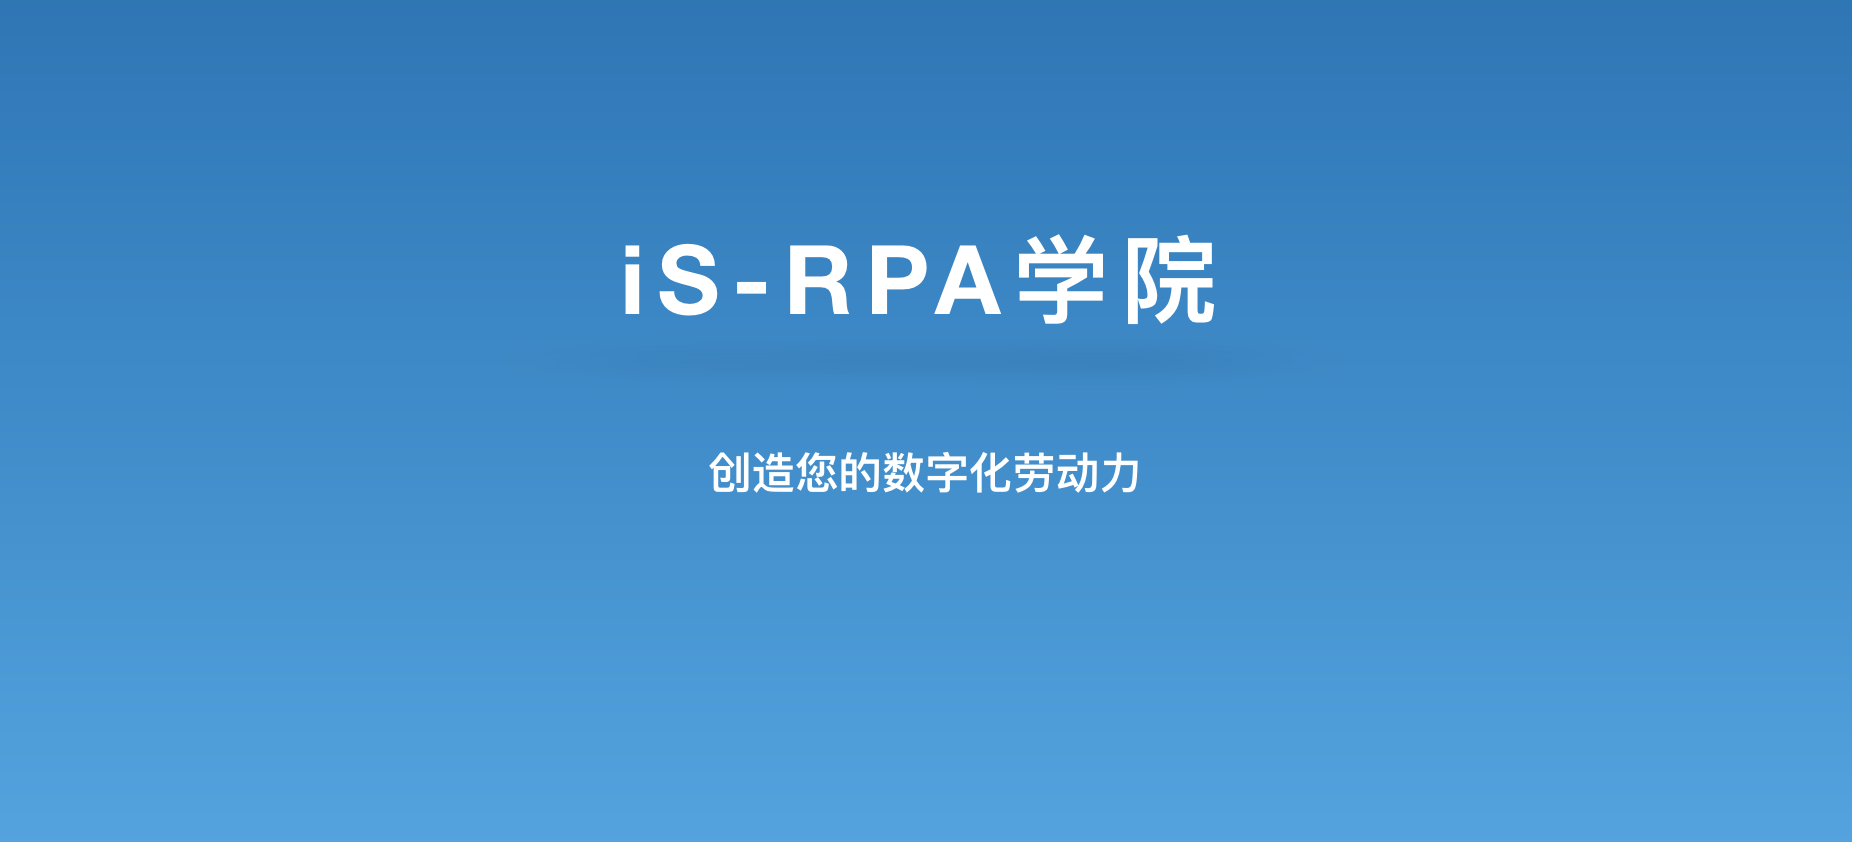 iS-RPA 高级设计师培训 - 南京 20190314 班 - 开班报名